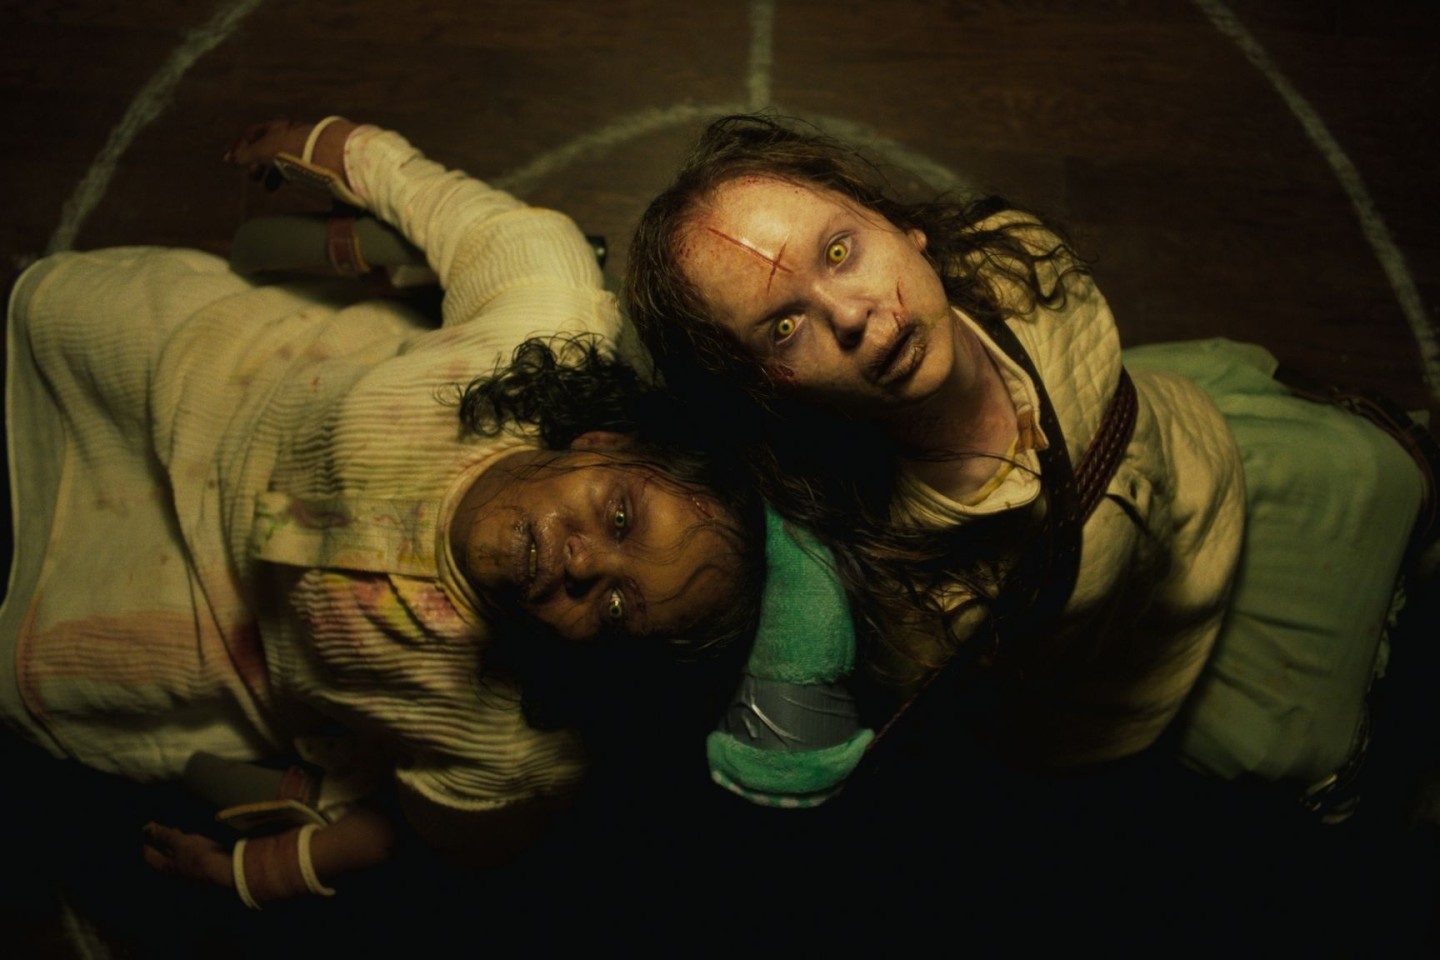 Vor dem Kinderfilm «Paw Patrol» wurden in einem Kino Trailer von den Horrorfilmen «Der Exorzist: Bekenntnis» und «Saw X» gezeigt.